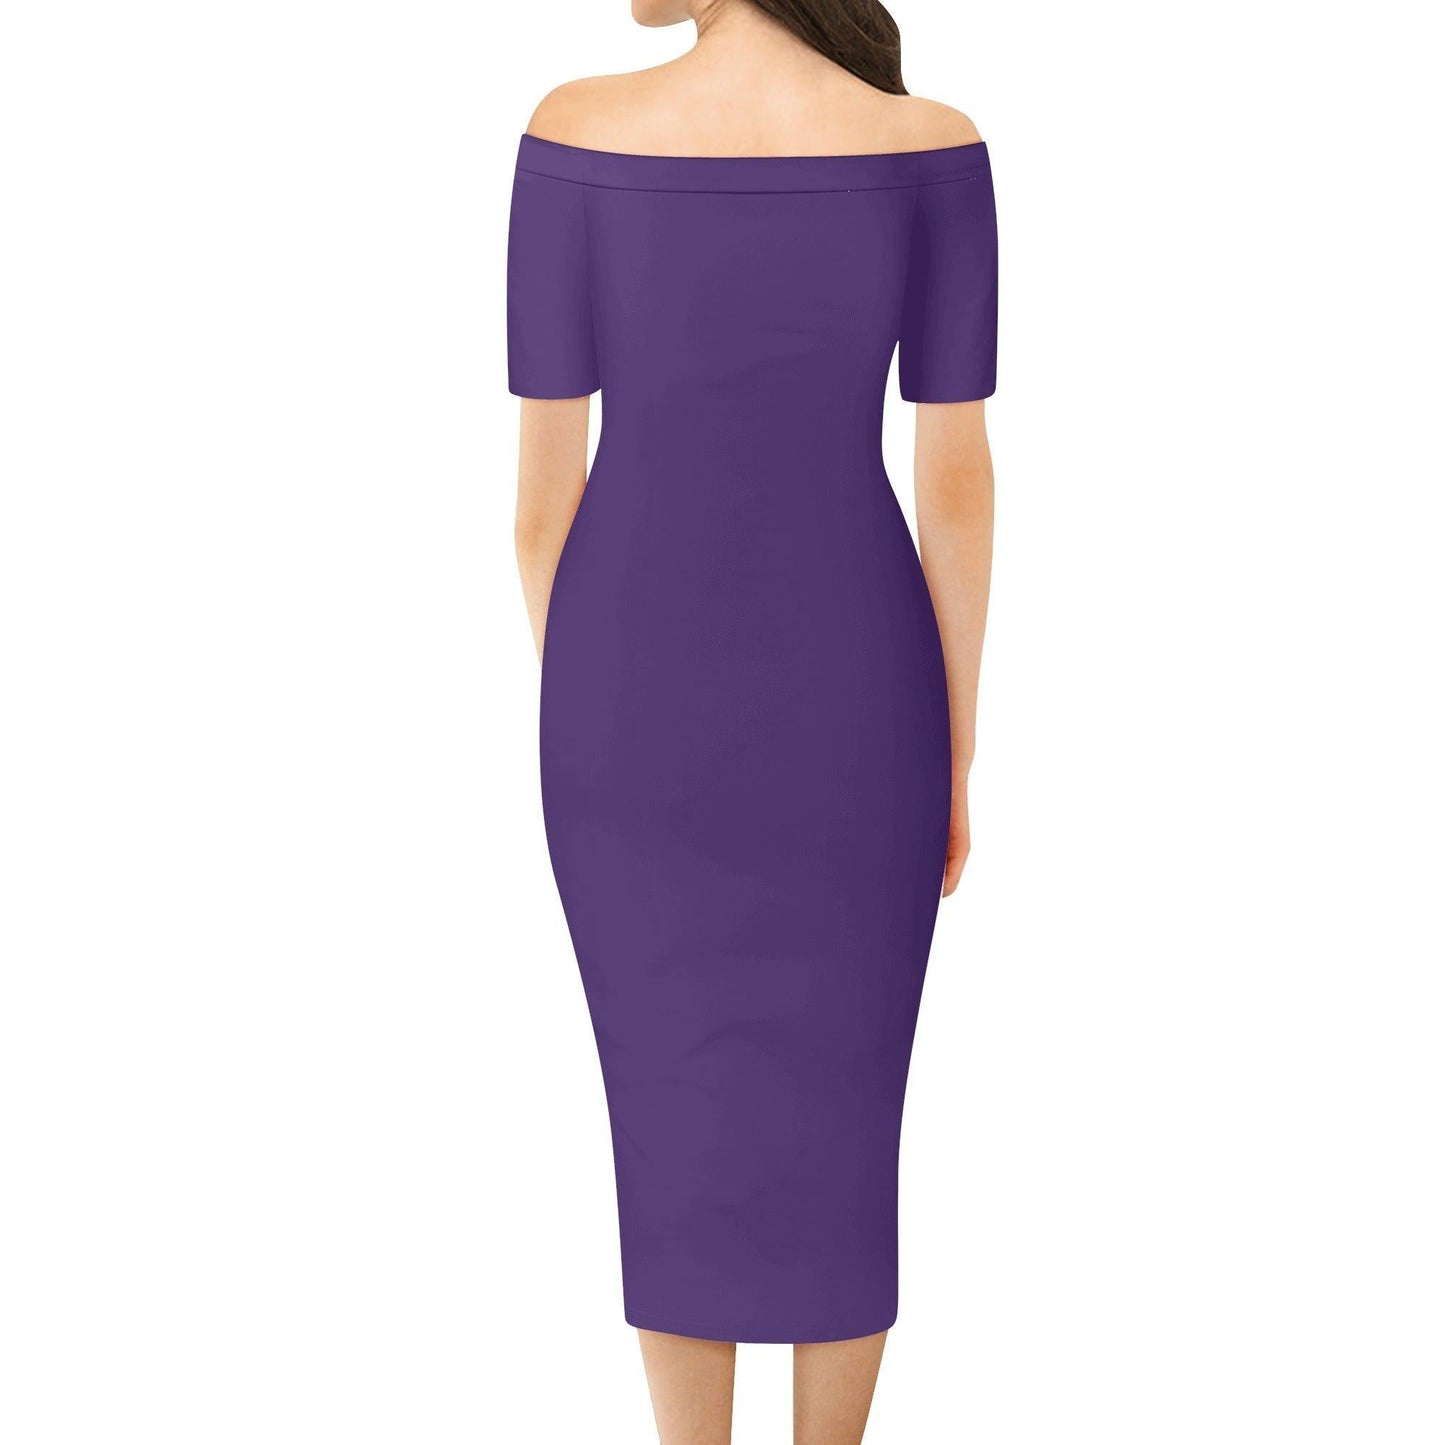 Lila Off-Shoulder-Kleid -- Lila Off-Shoulder-Kleid - undefined Off-Shoulder-Kleid | JLR Design